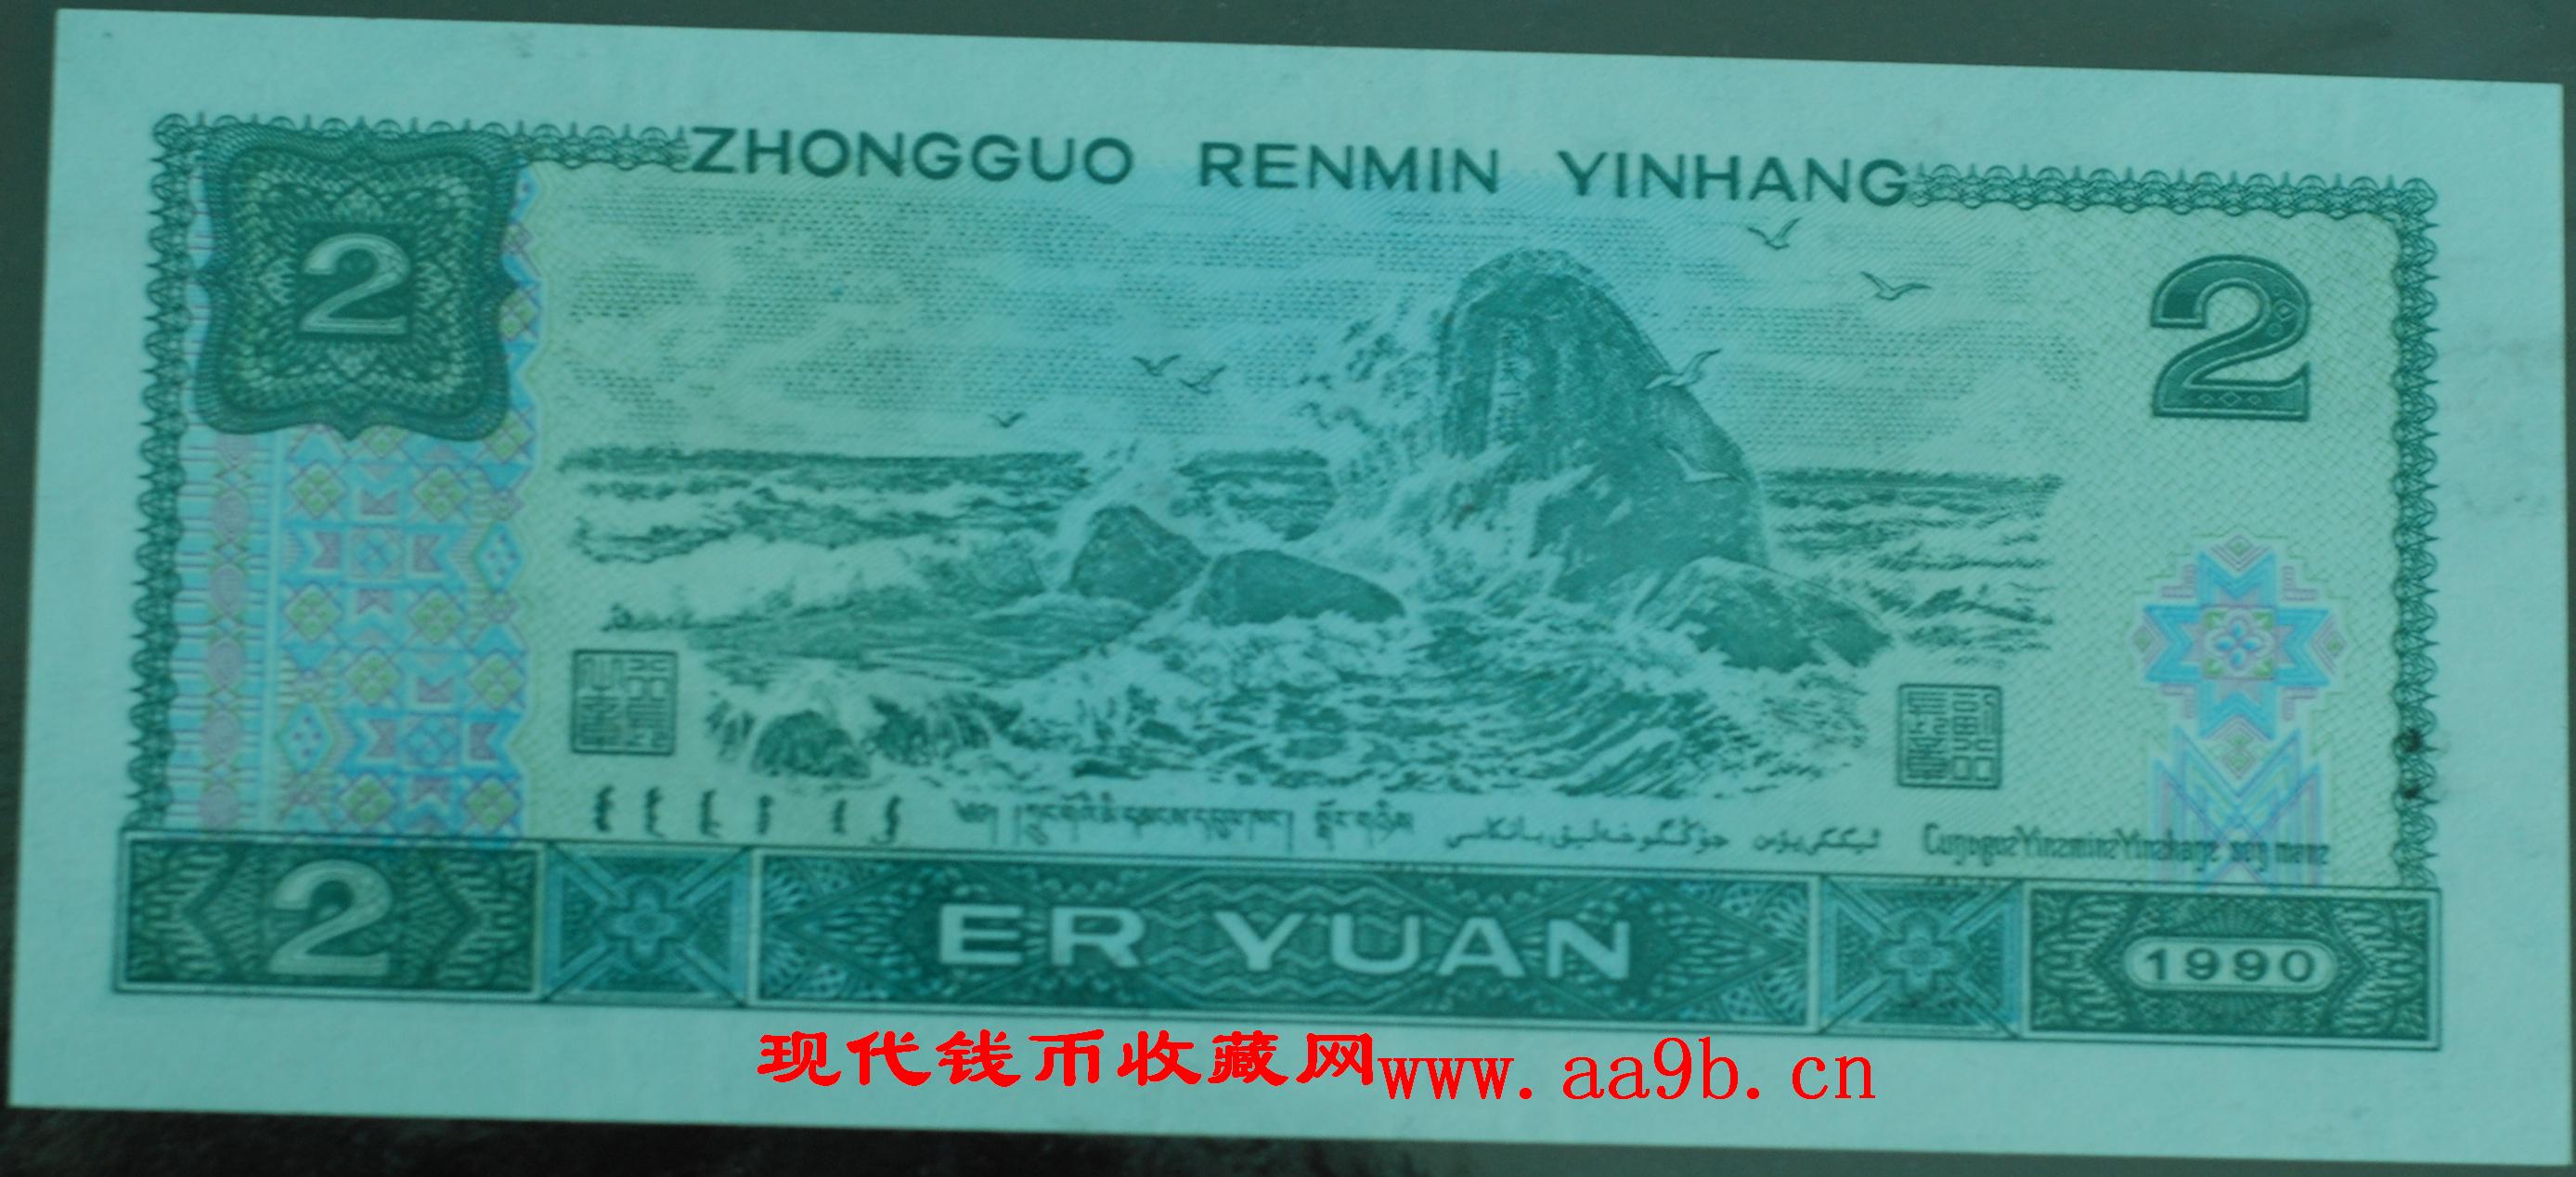 1990版2元错版人民币